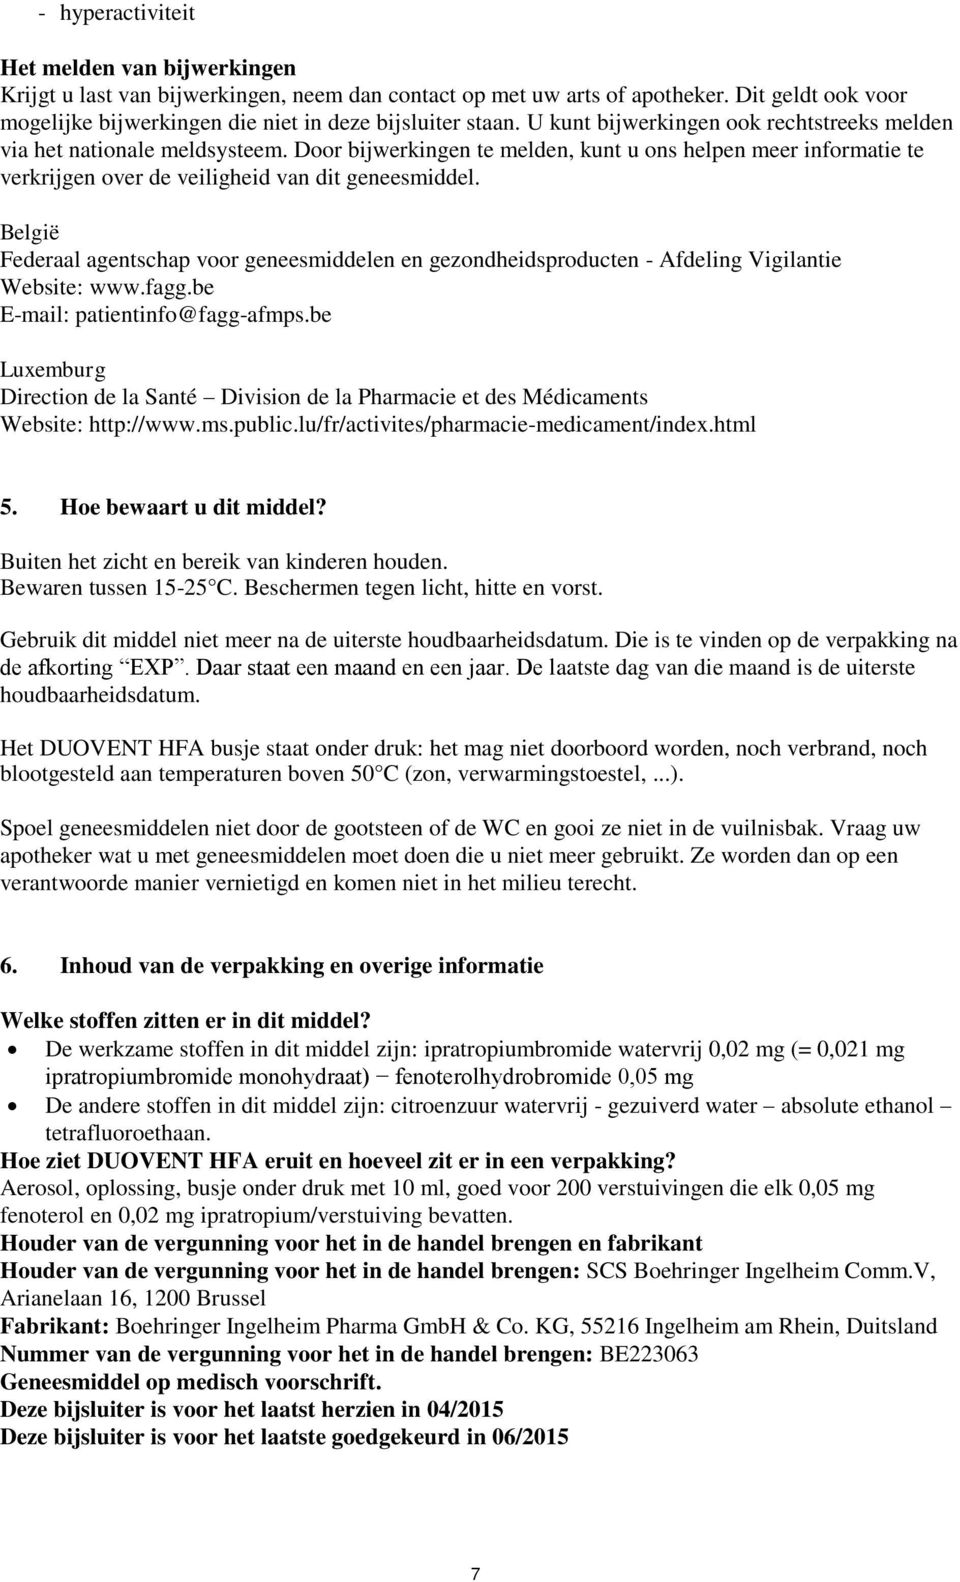 België Federaal agentschap voor geneesmiddelen en gezondheidsproducten - Afdeling Vigilantie Website: www.fagg.be E-mail: patientinfo@fagg-afmps.